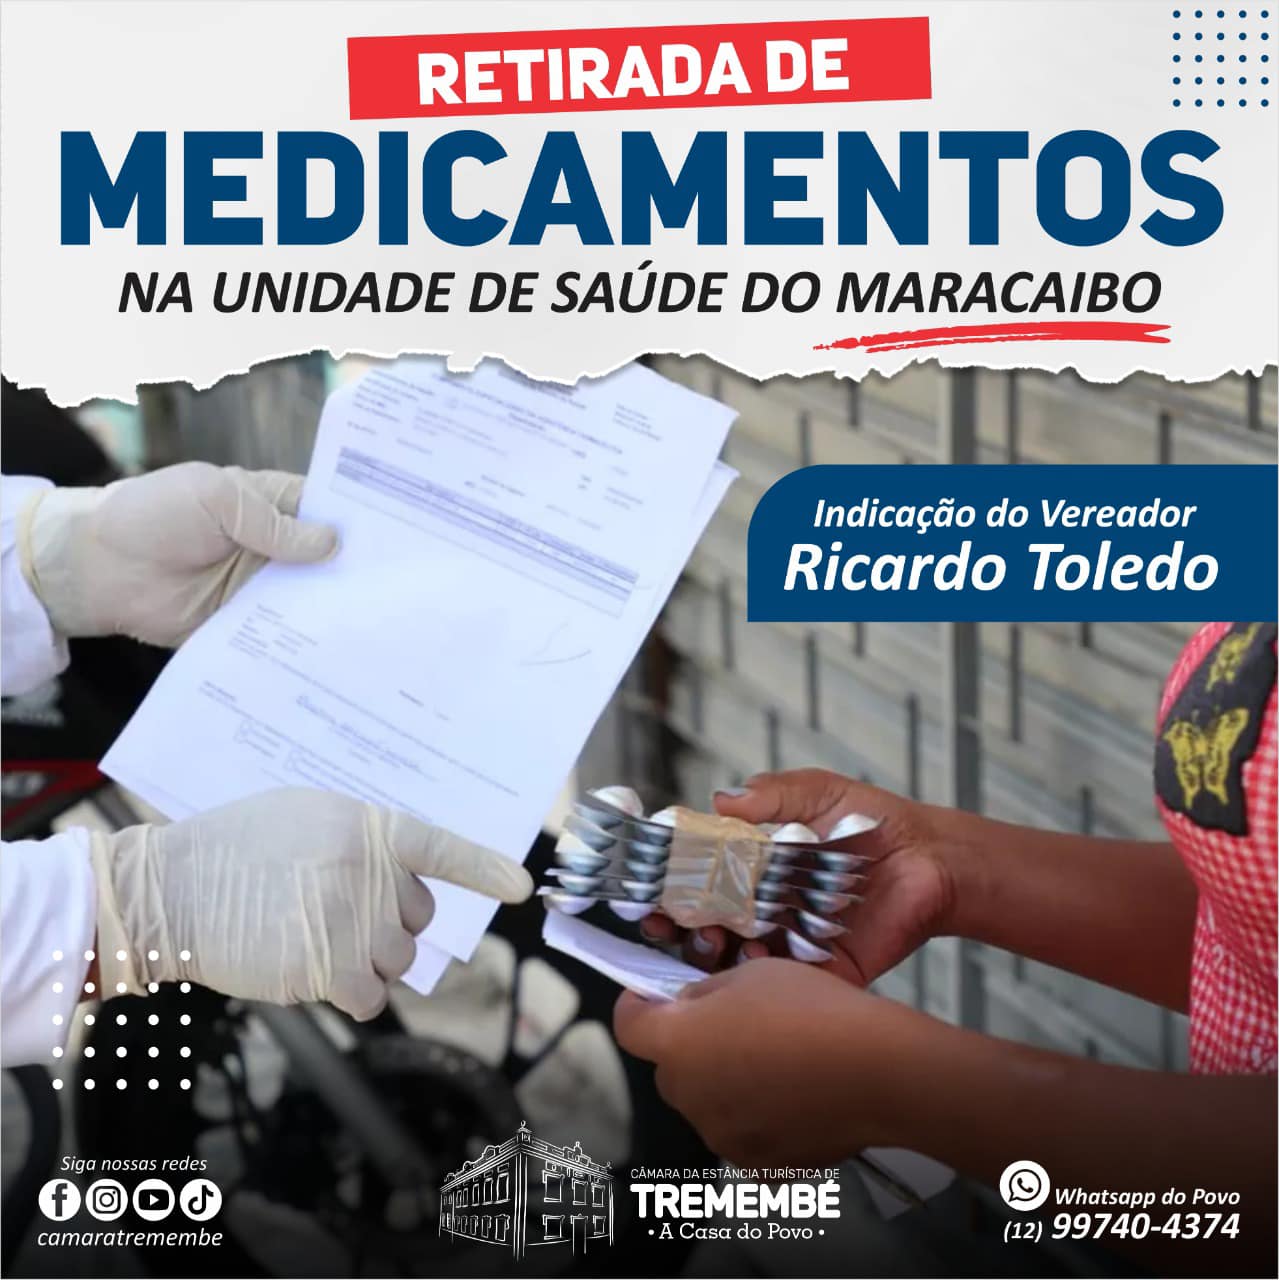 Entrega de medicamentos para moradores da região do Maracaibo